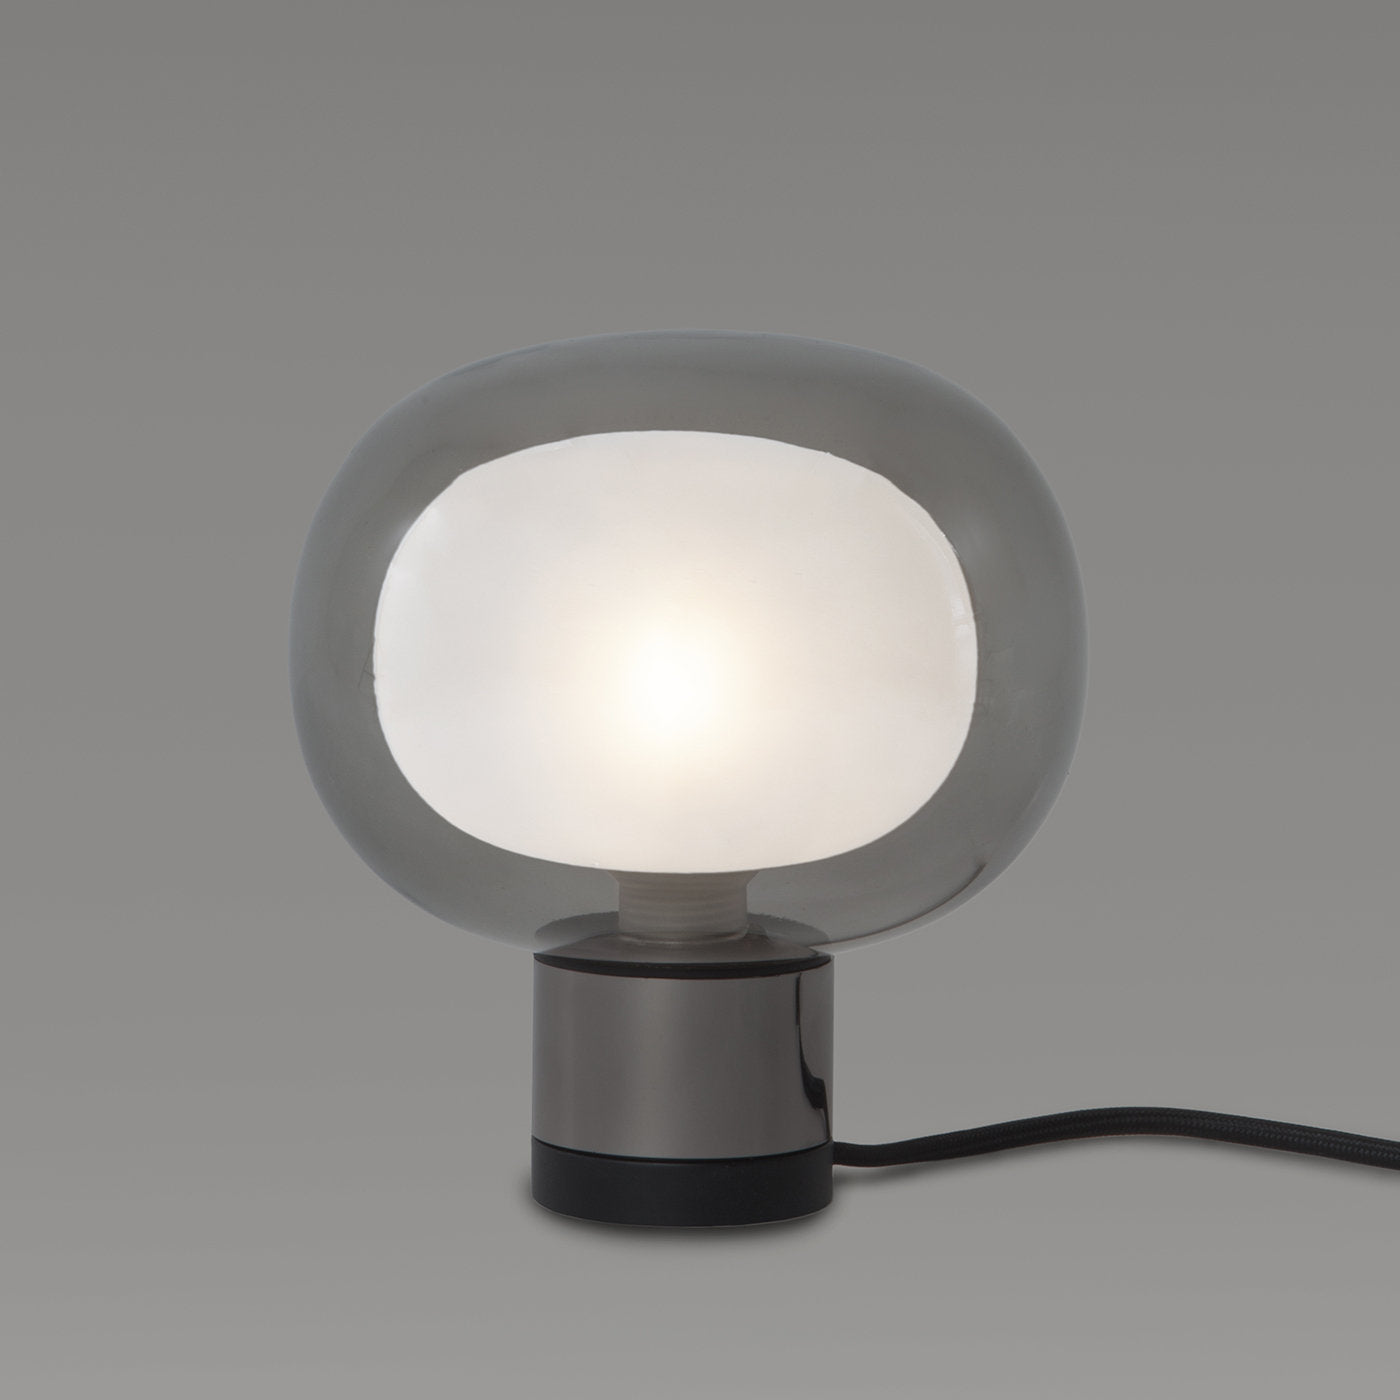 Nabila Black Chrome Table Lamp by Corrado Dotti - Alternative view 1